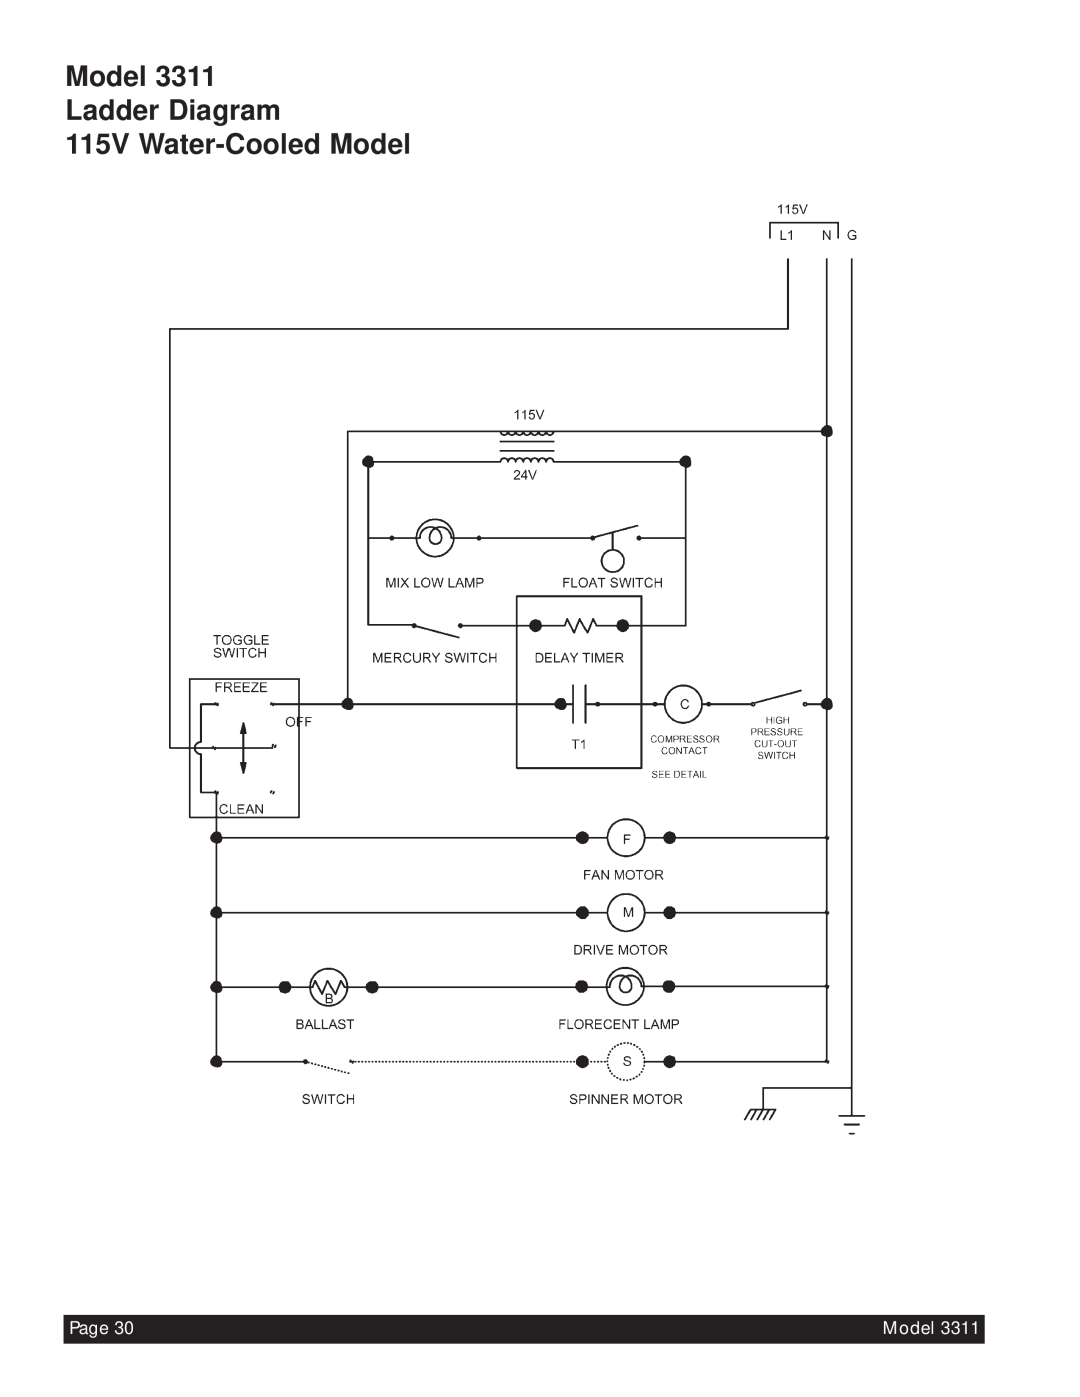 Beverage-Air 3311 manual Model Ladder Diagram 115V Water-CooledModel, Page 